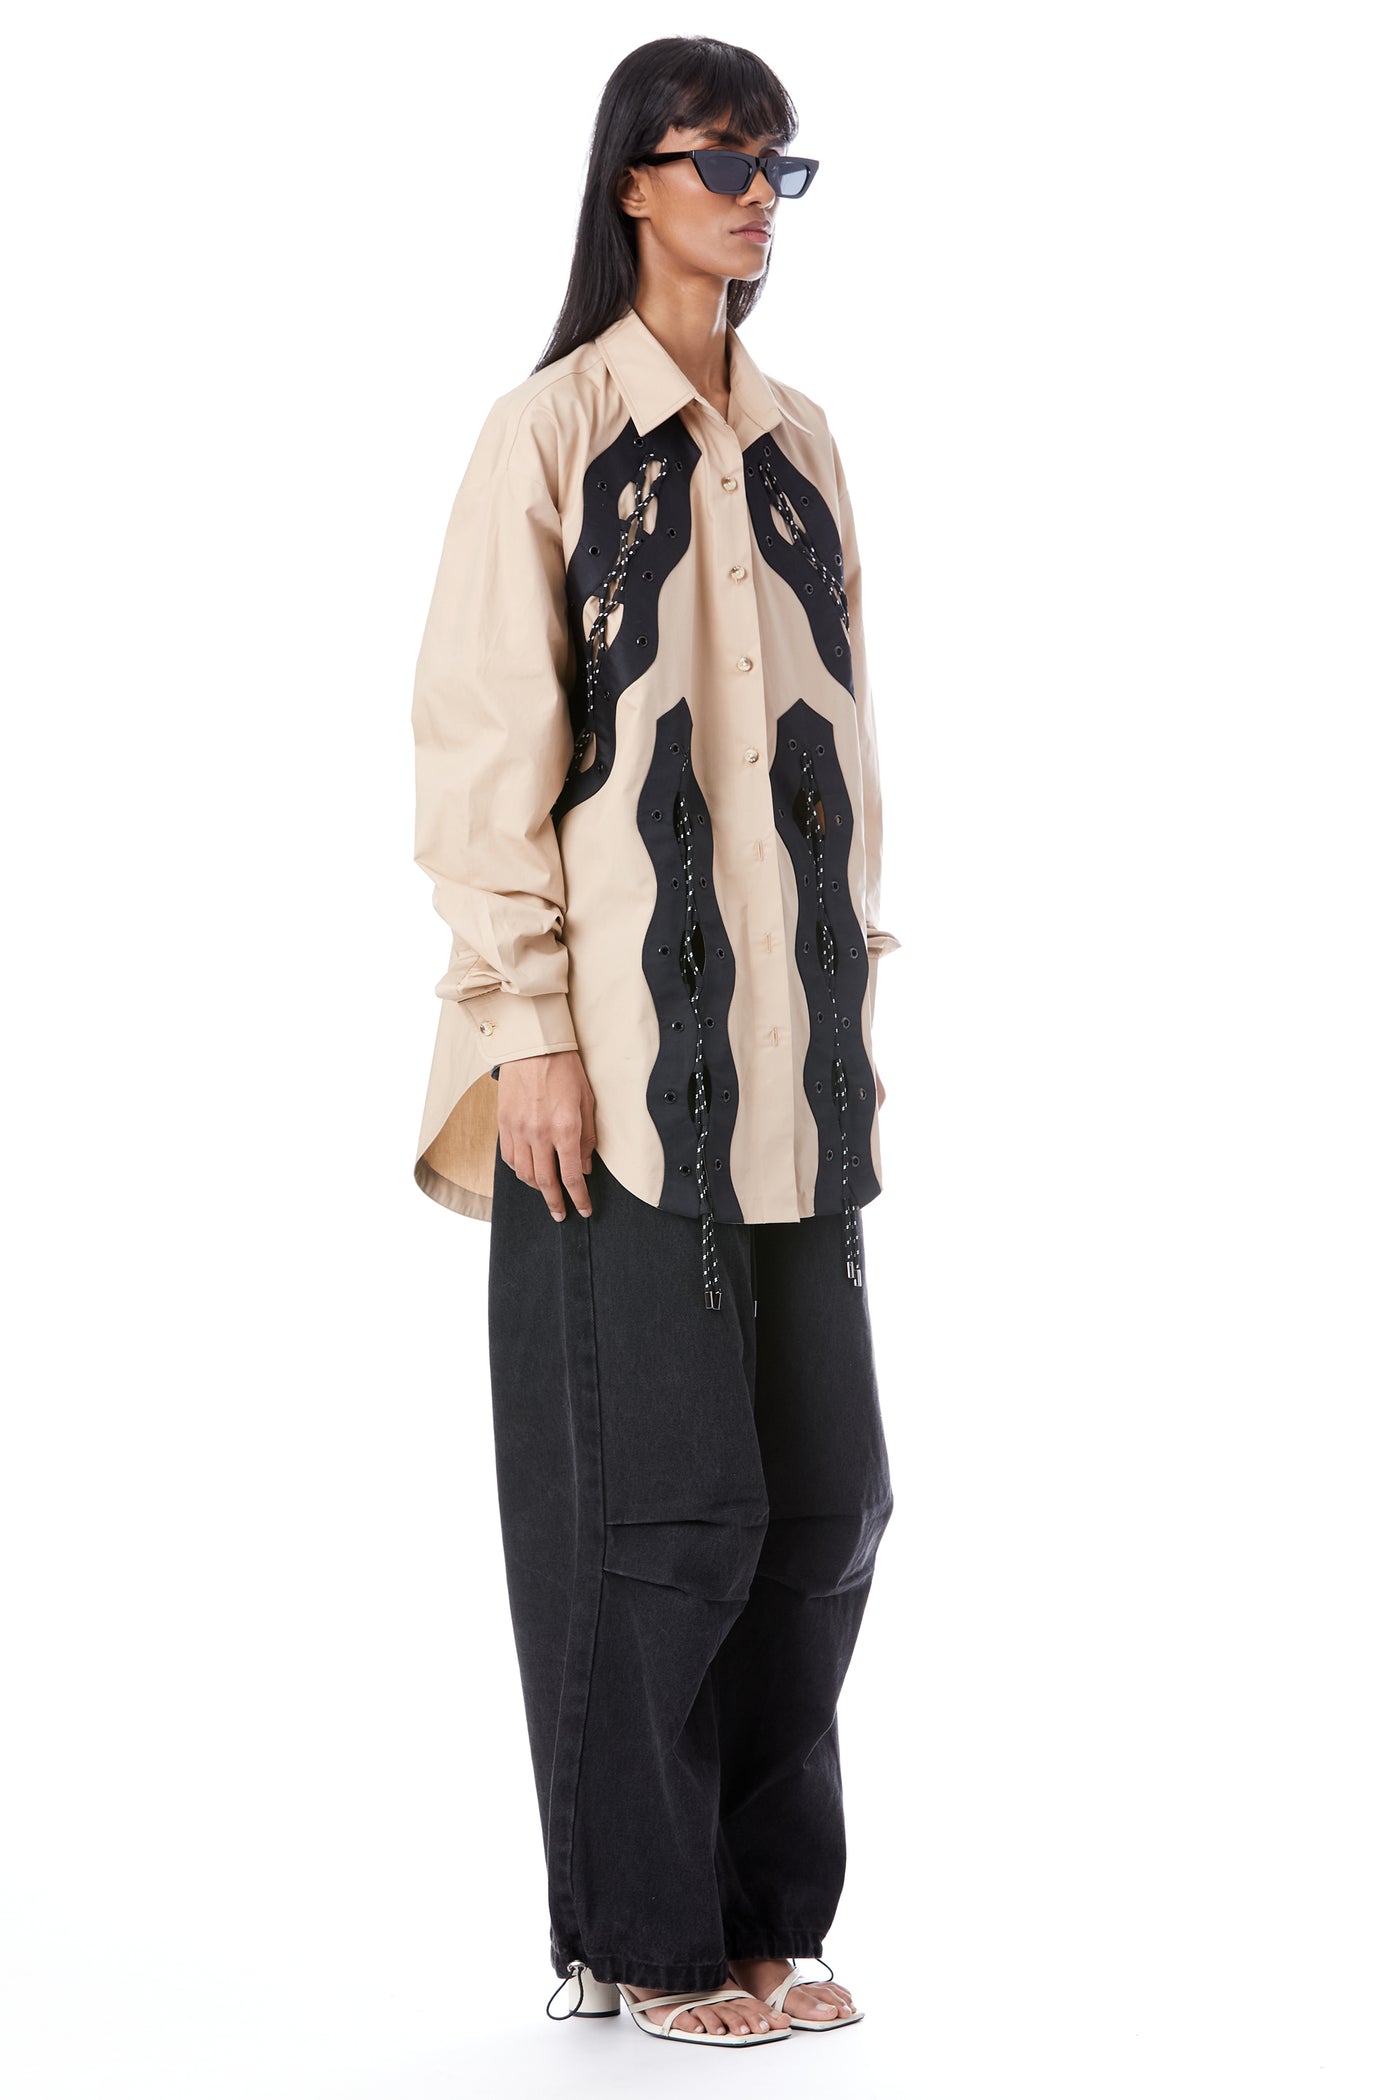 Kanika Goyal Label Sneaks Cord Tie Up Shirt indian designer wear online shopping melange singapore